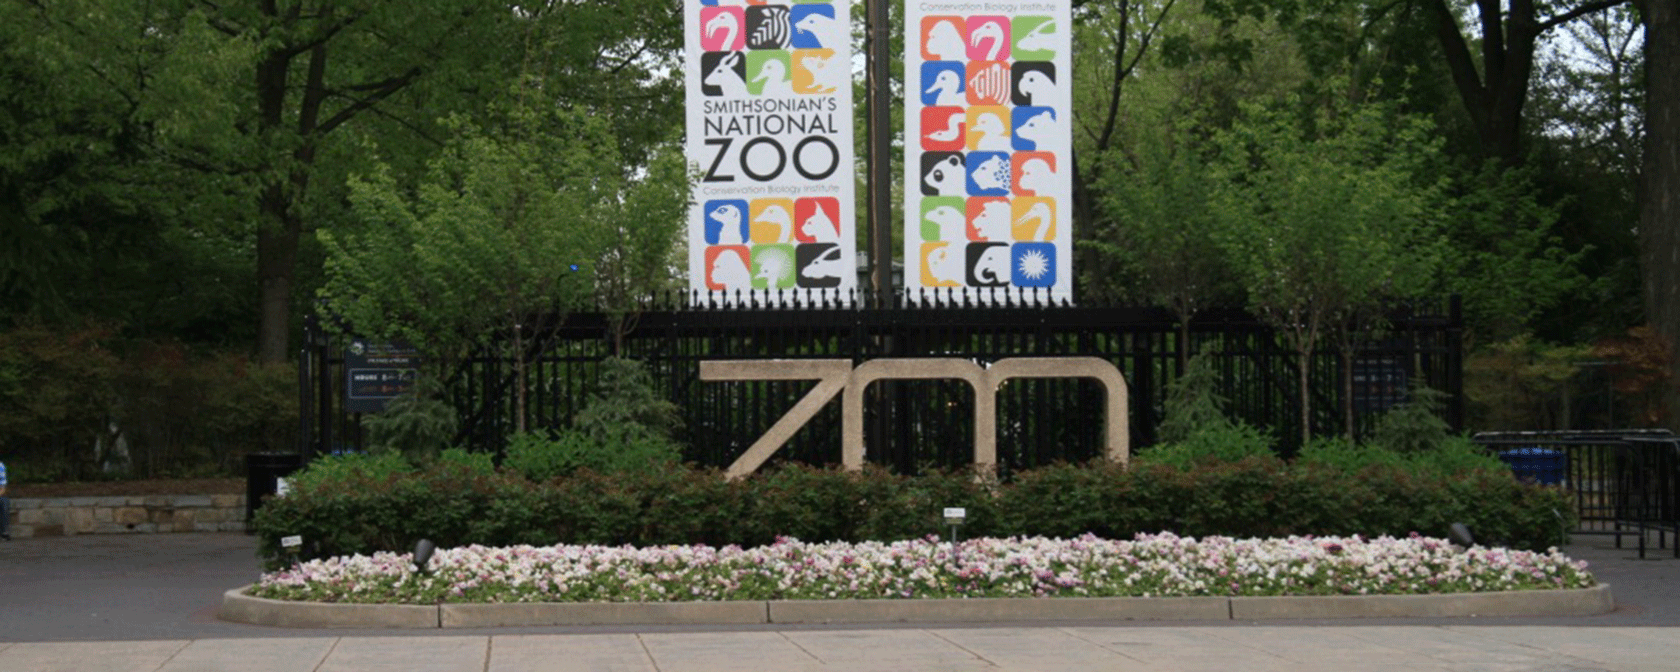 우들리 공원의 동물원 표지판